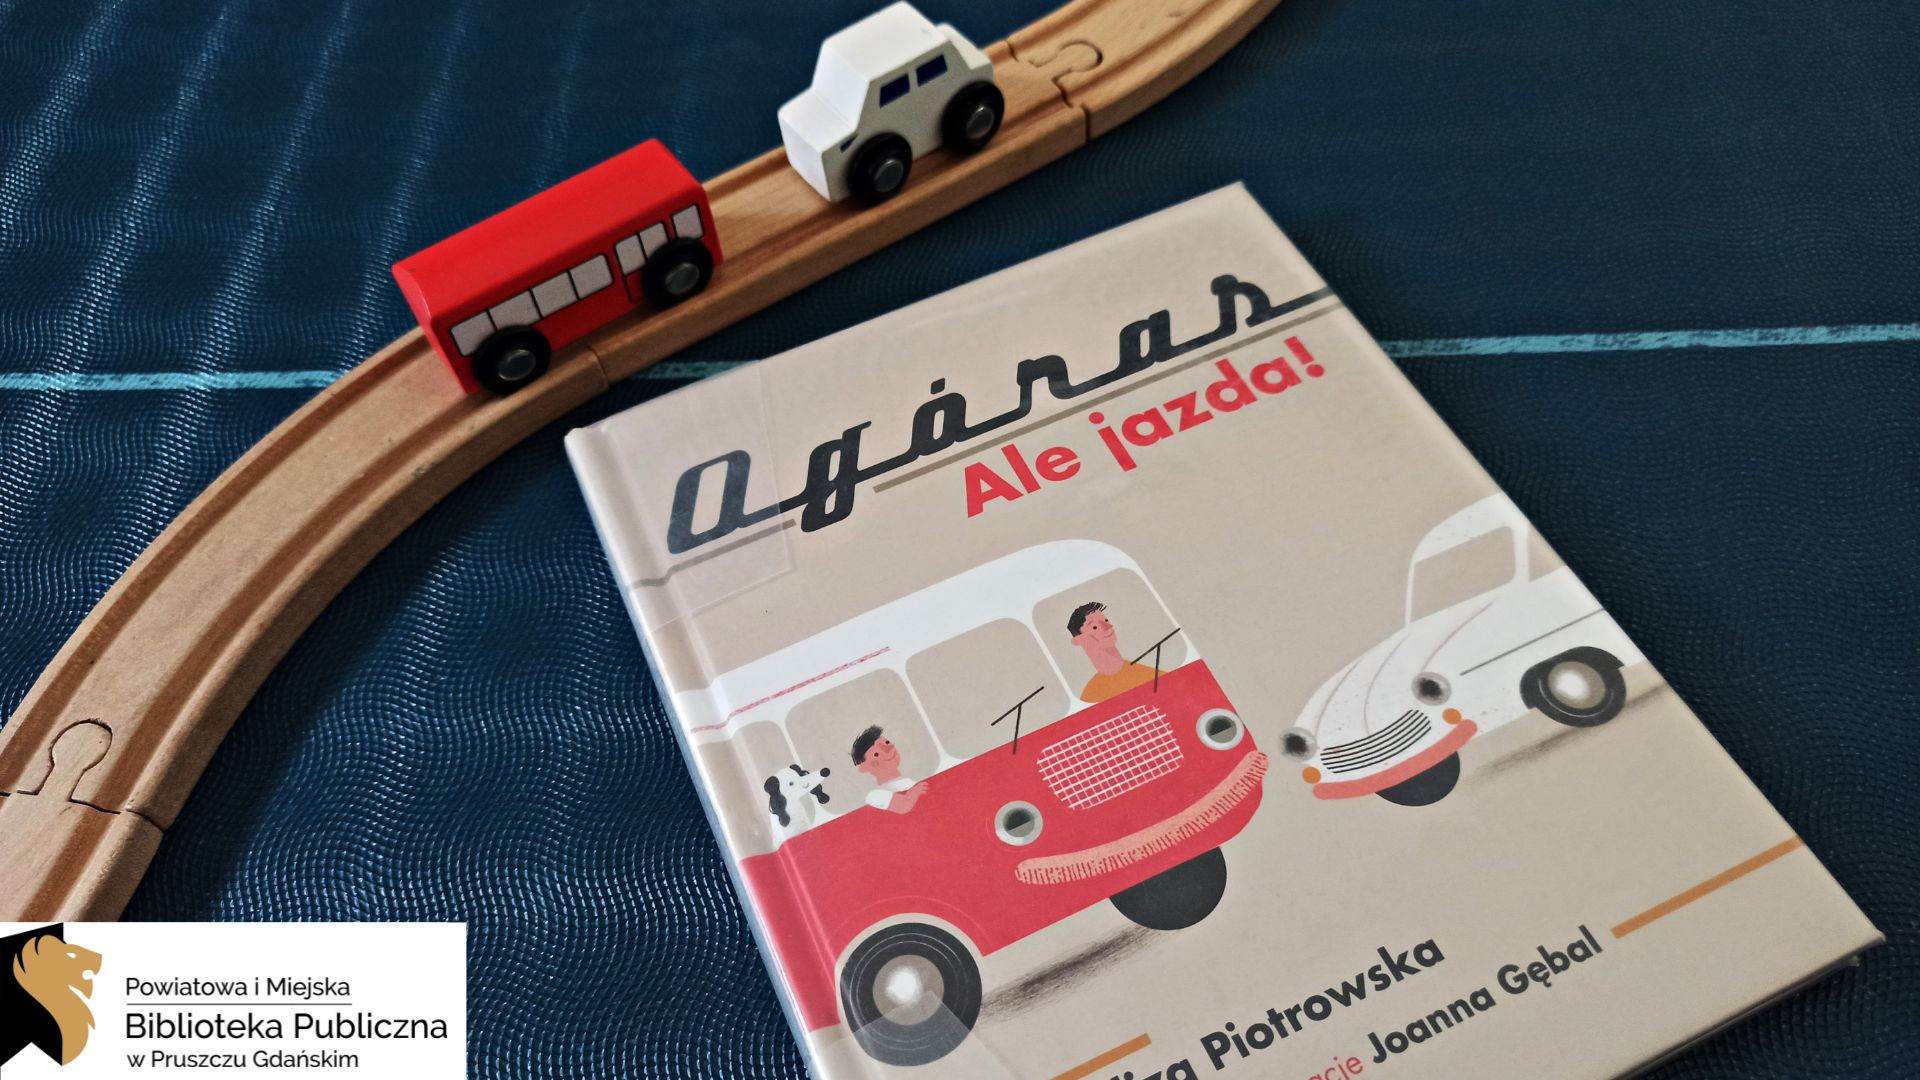 Na granatowym tle leży książka pt. „Ogóras. Ale jazda!”. Na okładce znajduje się zabytkowy czerwony autobus oraz biały samochód. Obok książki leży drewniany tor, na którym stoją dwa drewniane pojazdy – również czerwony autobus i biały samochód.